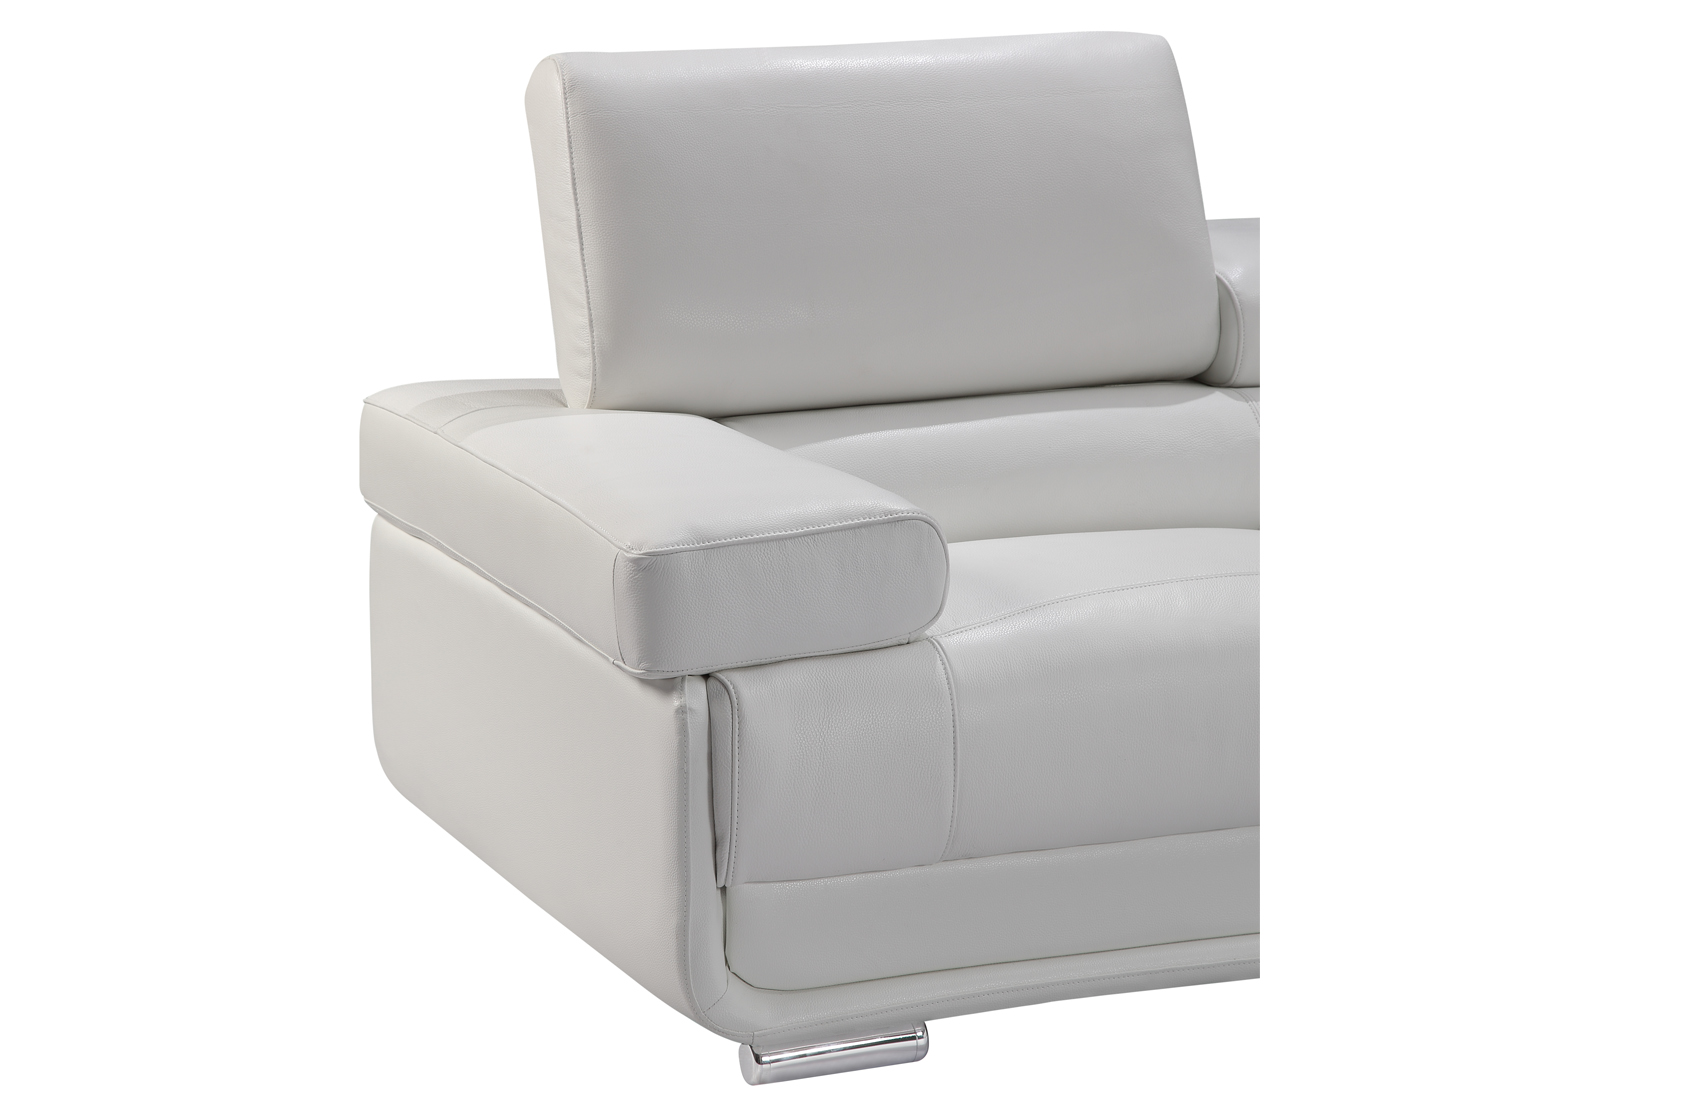 Elegant Corner Sectional L-shape Sofa